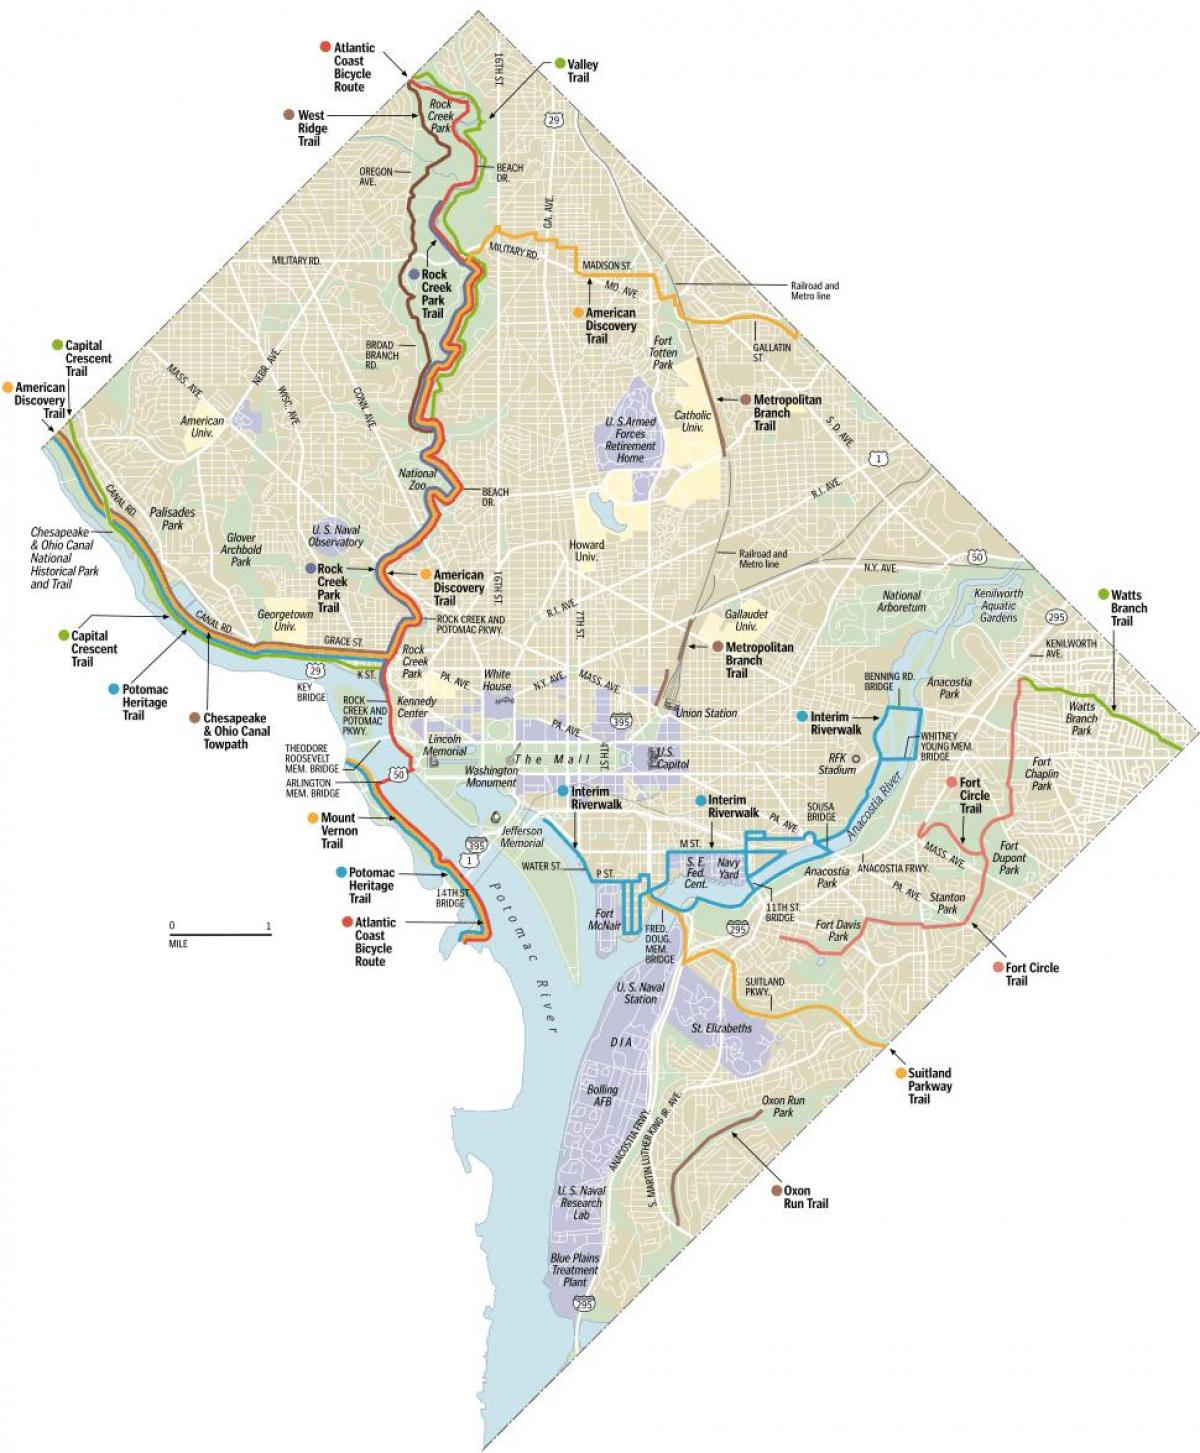 واشنگٹن ڈی سی موٹر سائیکل ٹریلس کا نقشہ